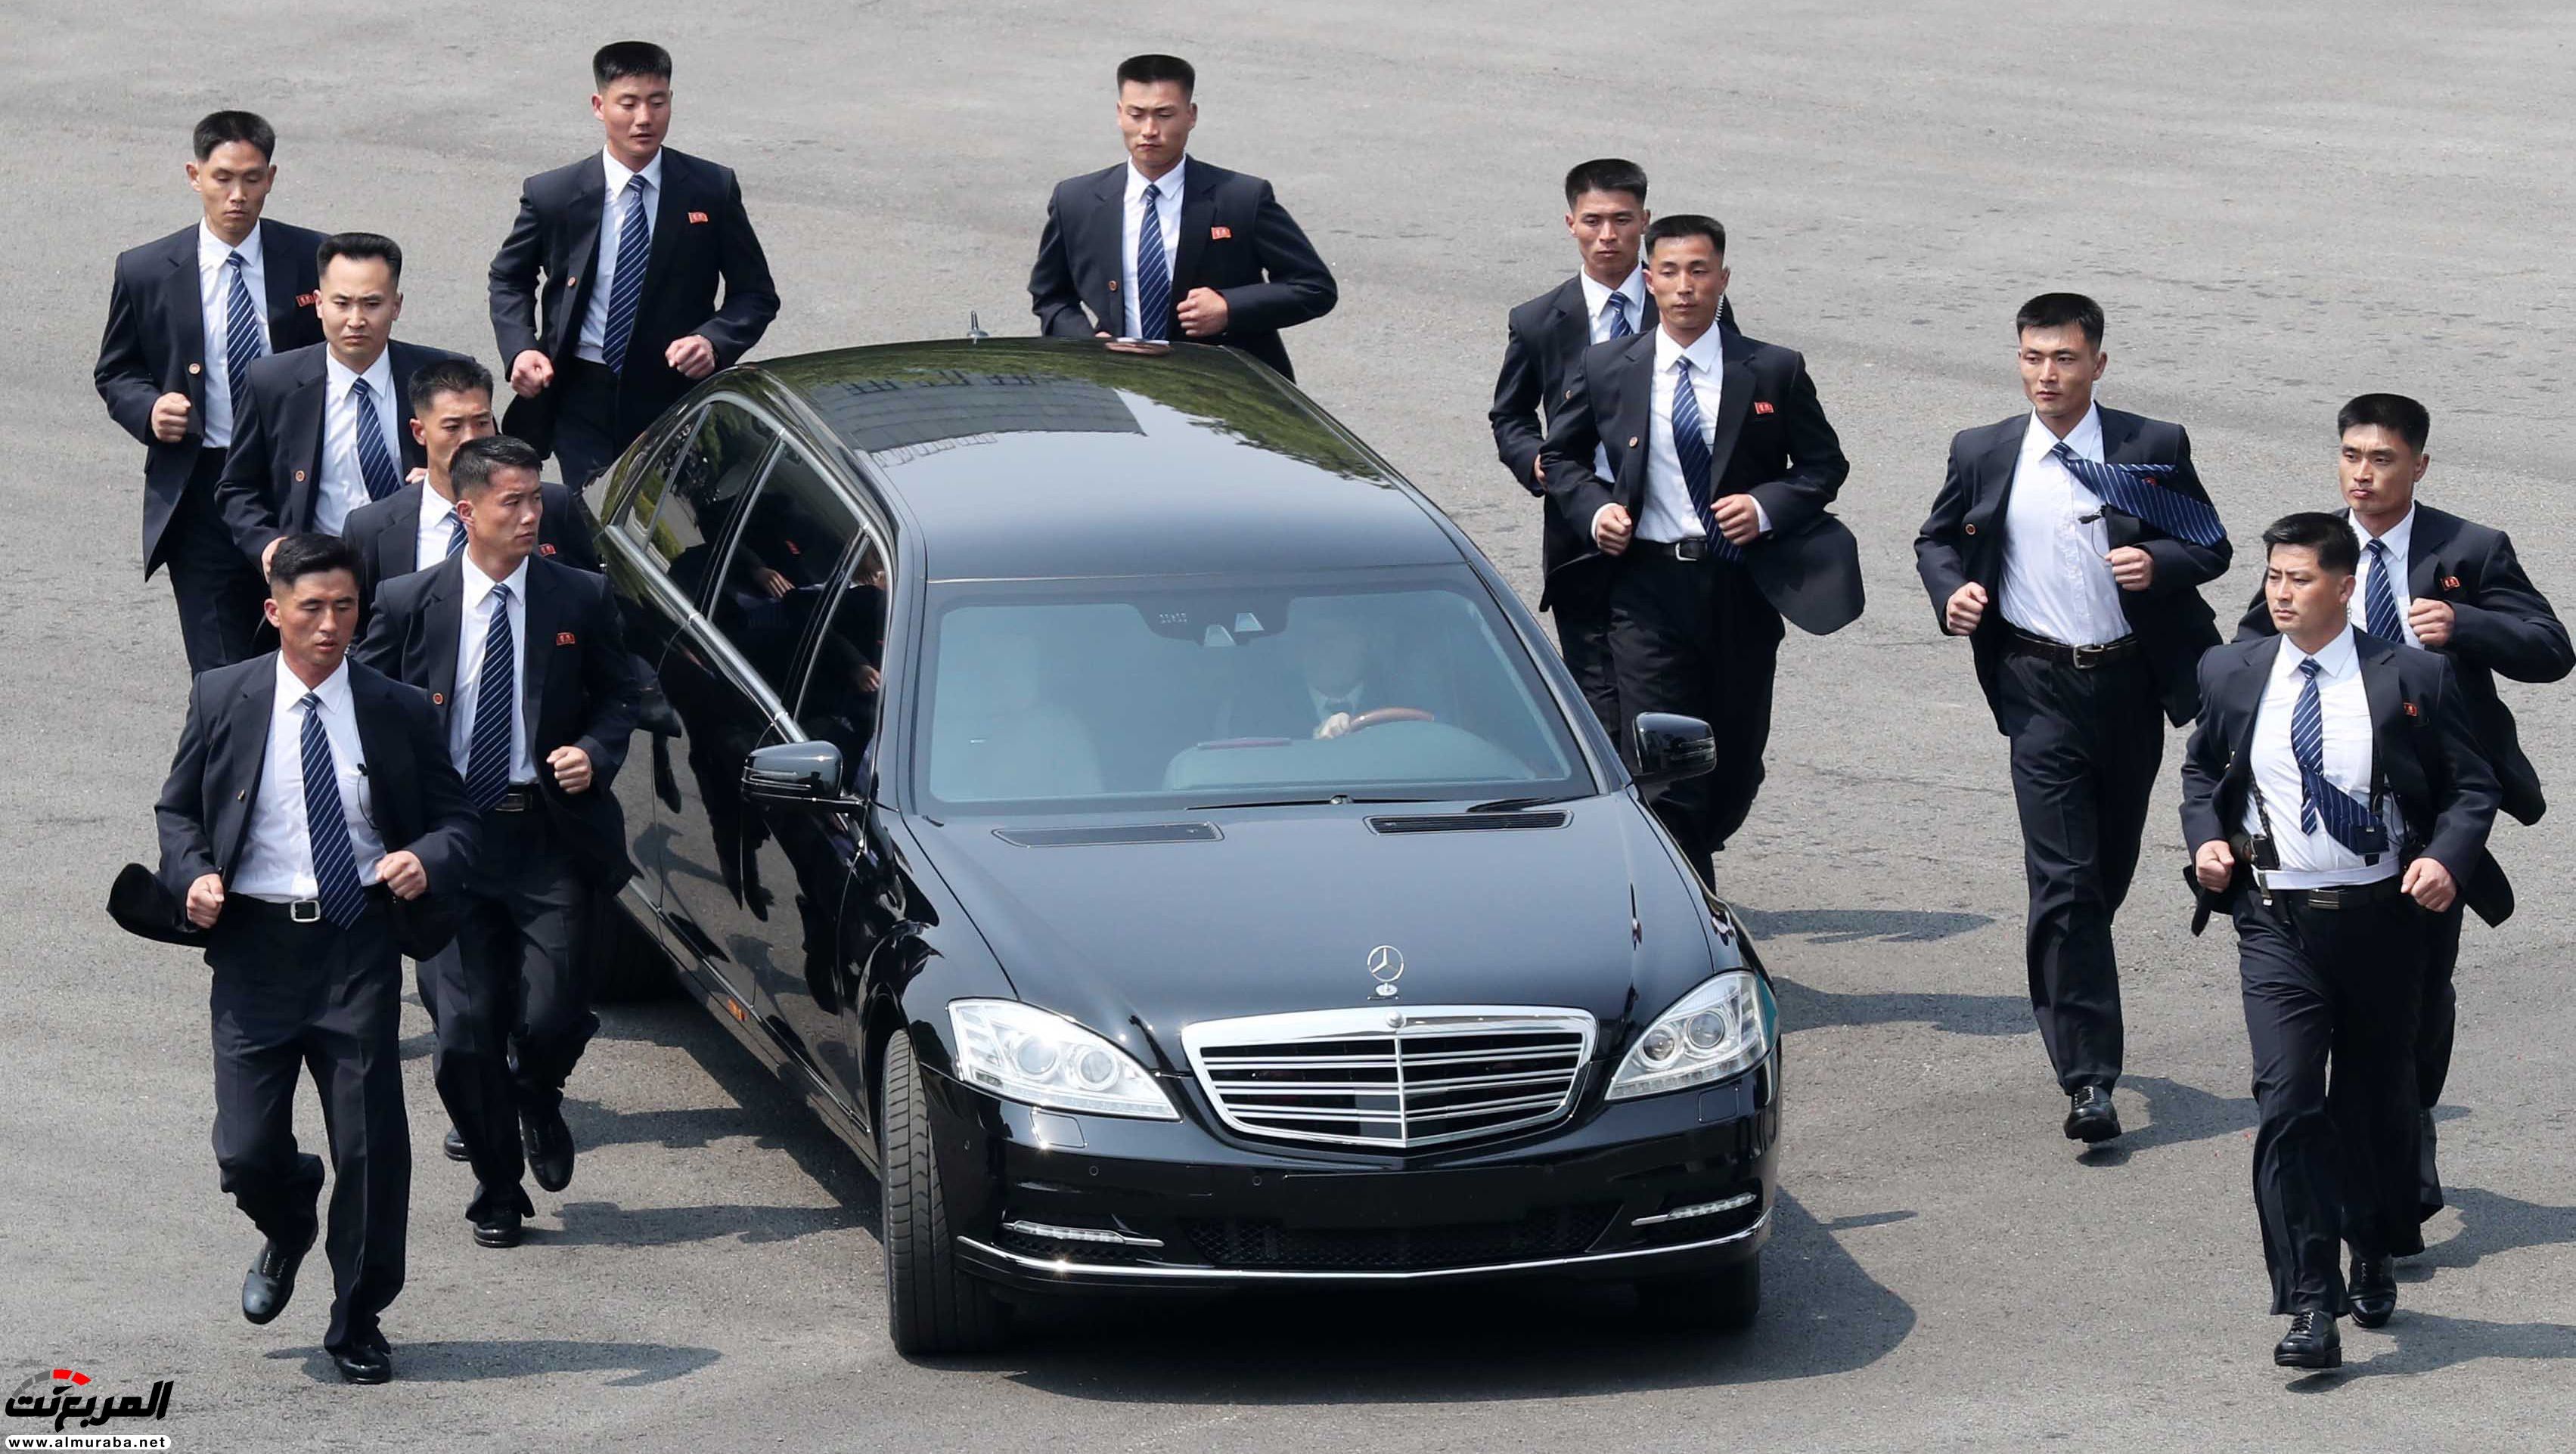 سر امتلاك زعيم كوريا الشمالية سيارات مرسيدس بولمان المحظورة على بلاده 7